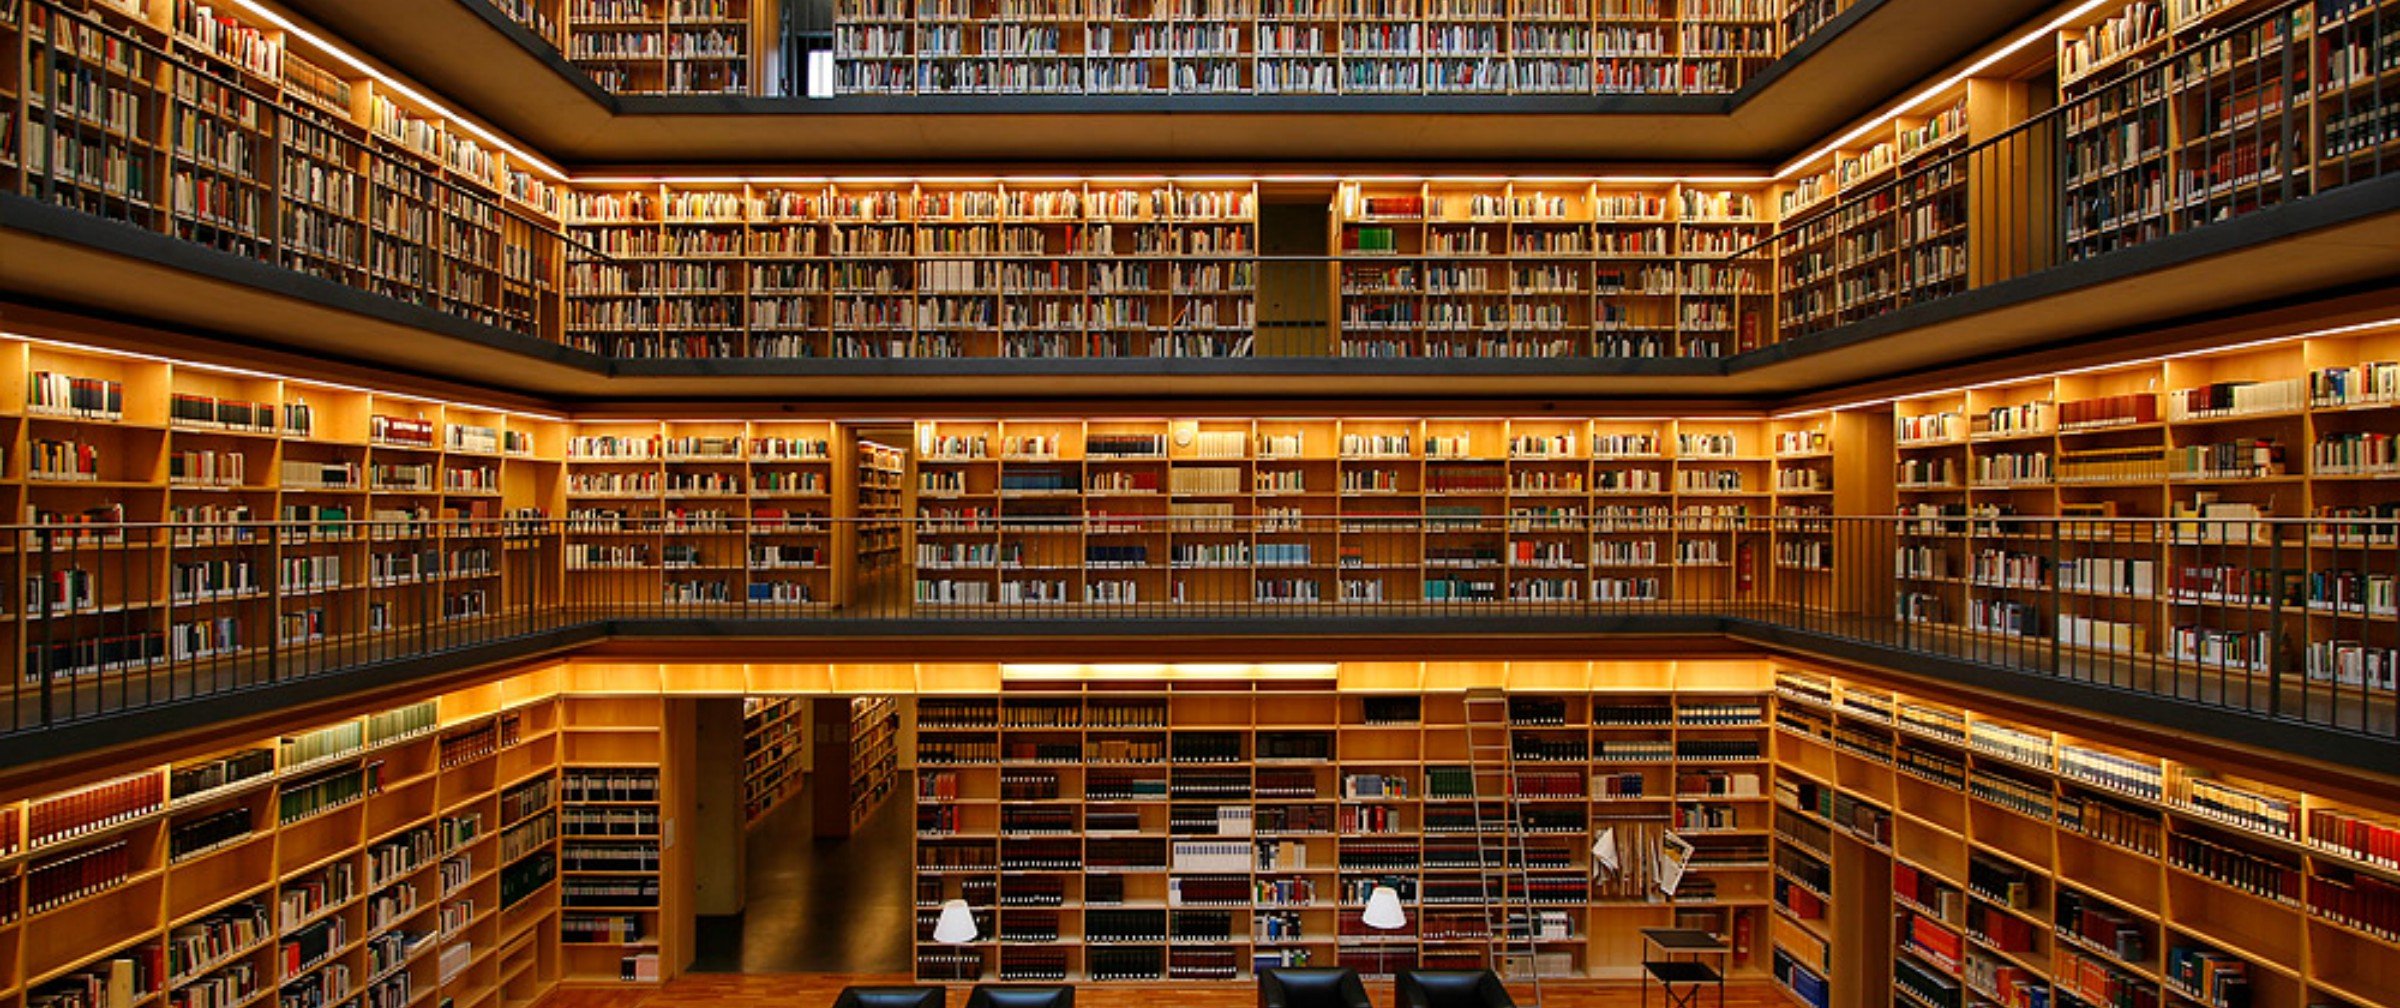 Picture library. 19-Ярусное книгохранилище РГБ. Библиотека Phillips Exeter. Красивая библиотека. Большая библиотека.